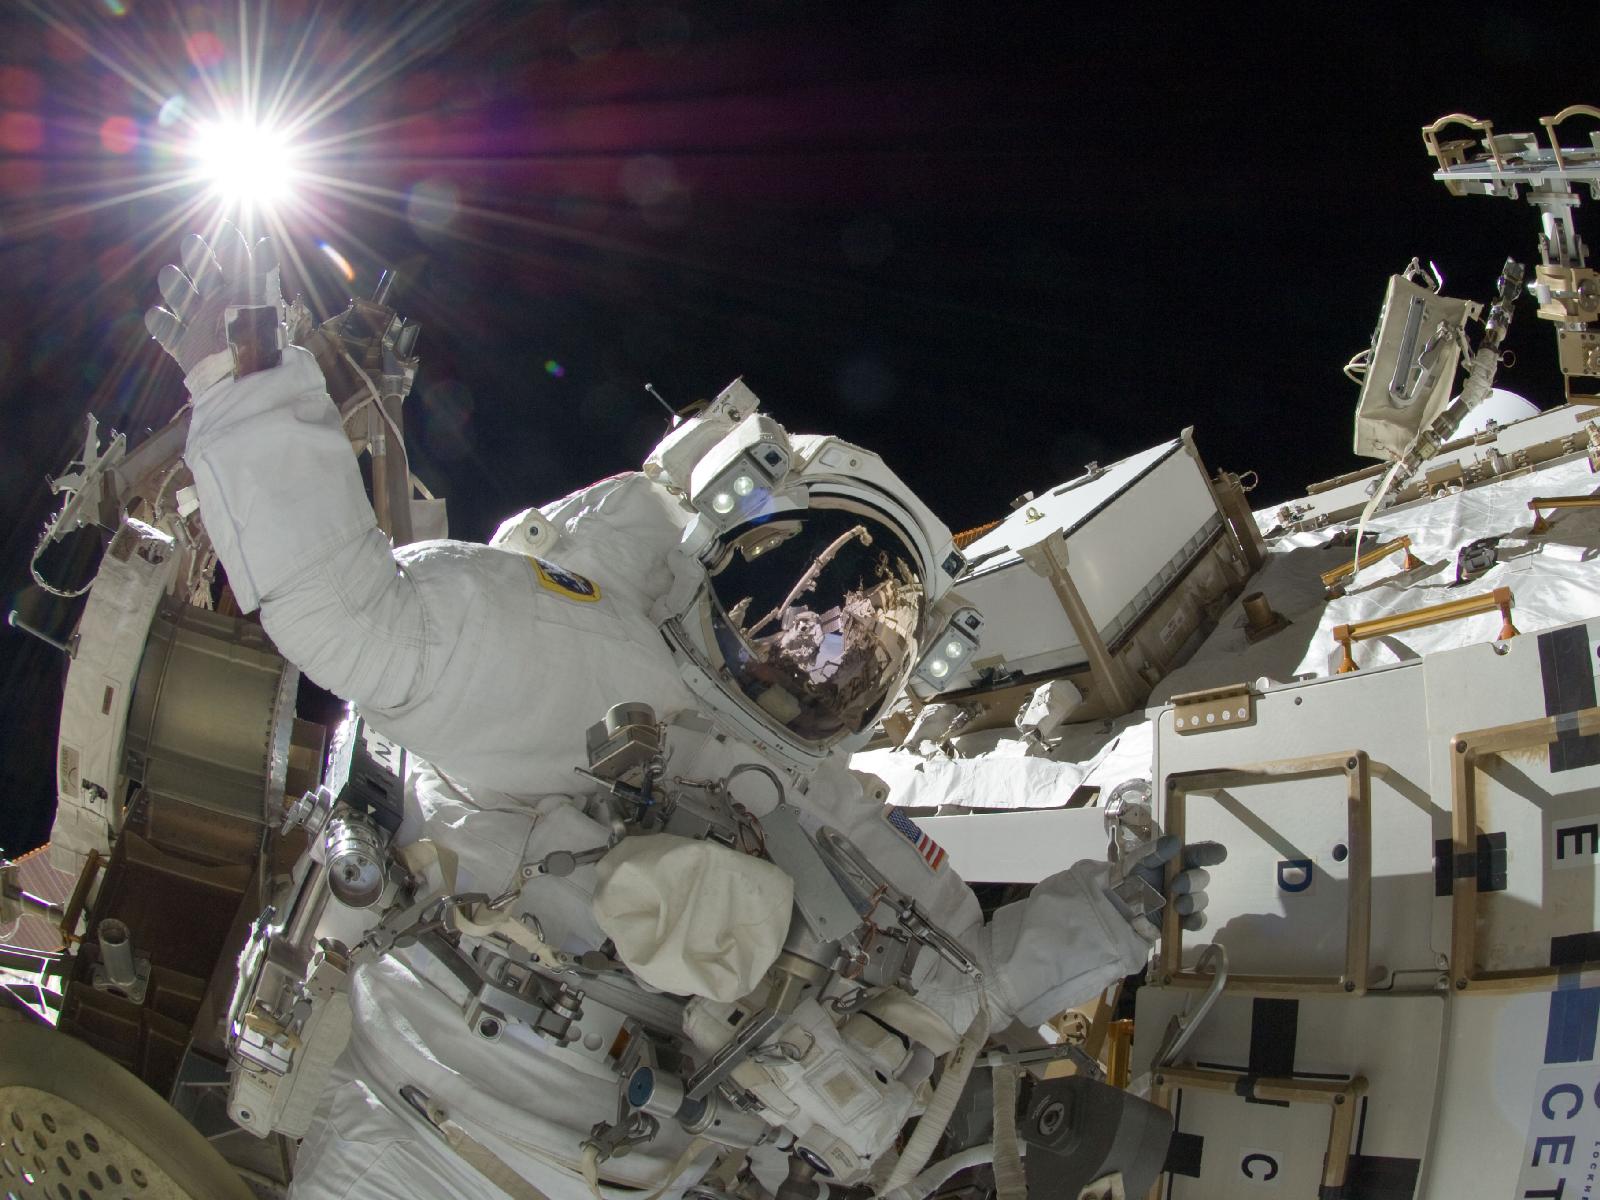 Фото: во время «прогулки» в открытом космосе Сунита Уильямс "коснулась"  нашей ближайшей звезды